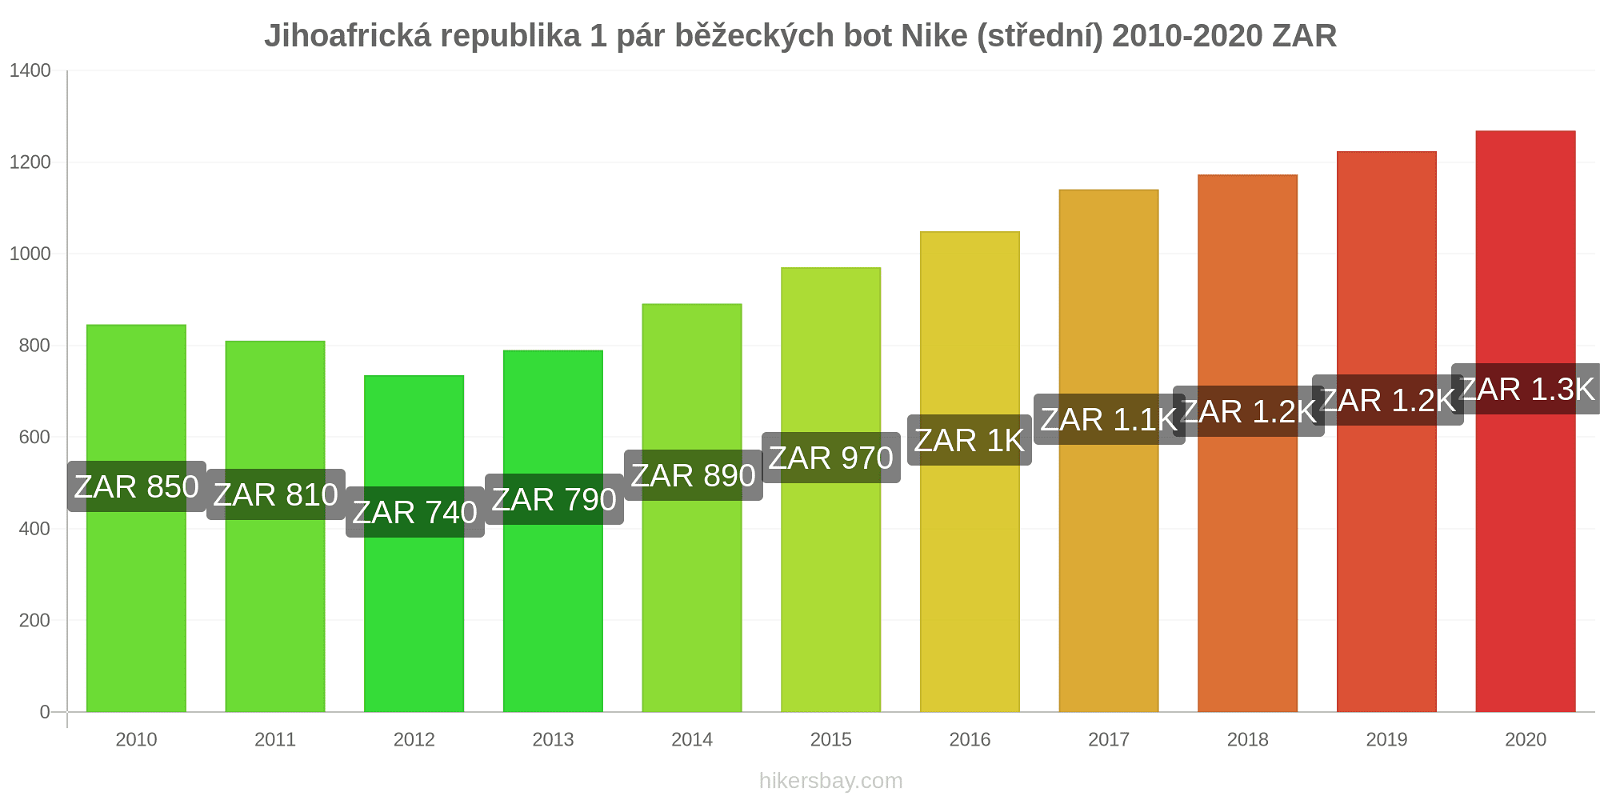 Jihoafrická republika změny cen 1 pár běžeckých bot Nike (střední) hikersbay.com